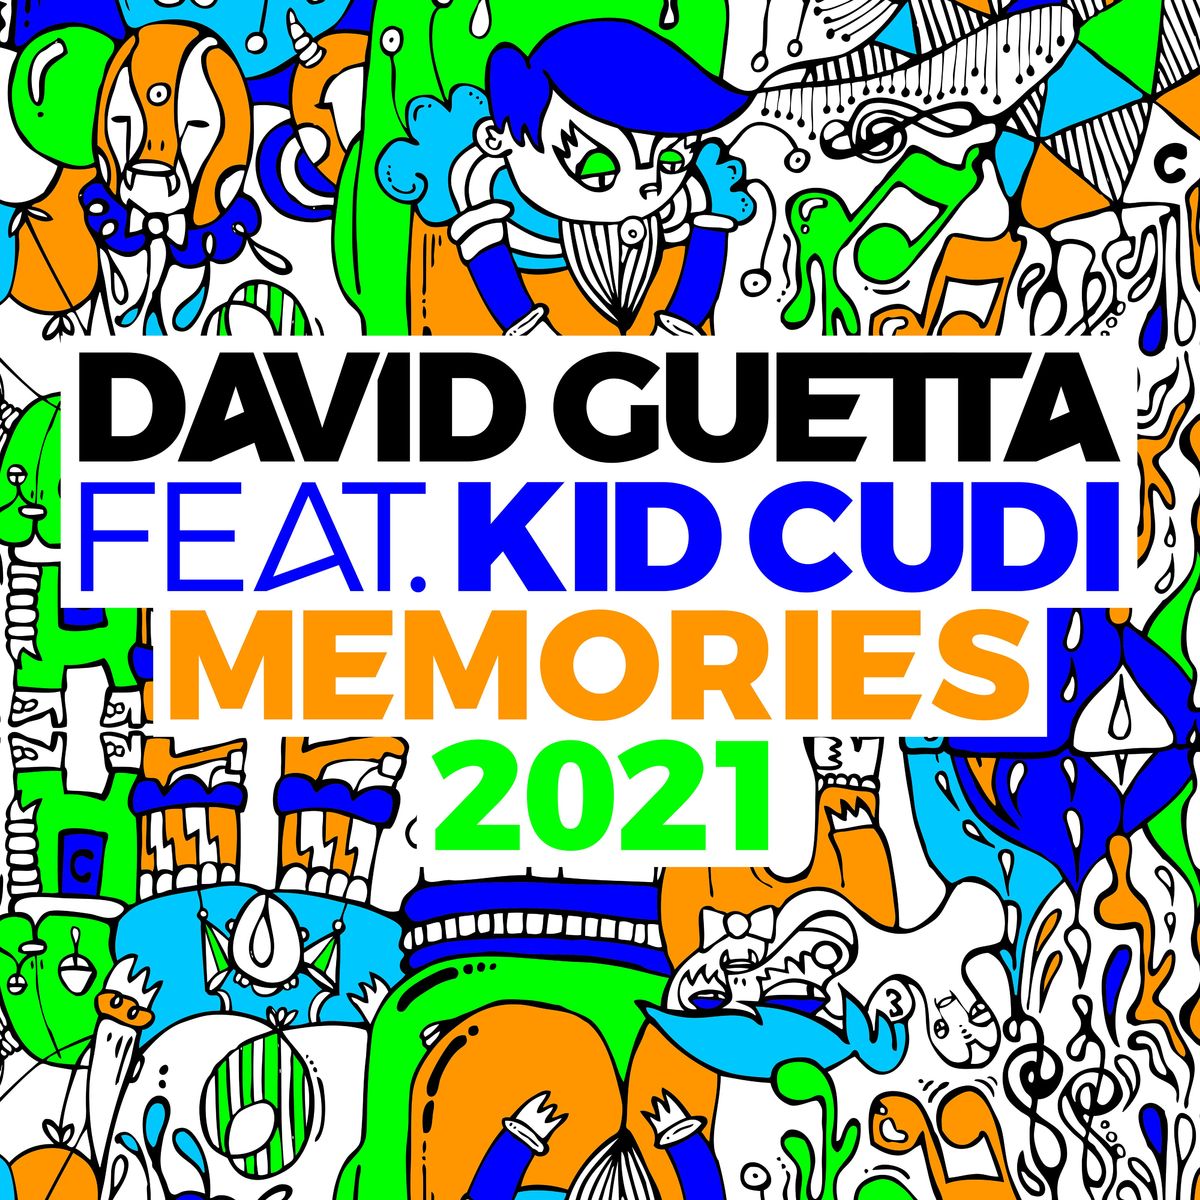 David Guetta ft Kid Cudi - Memories (2021 Remix)